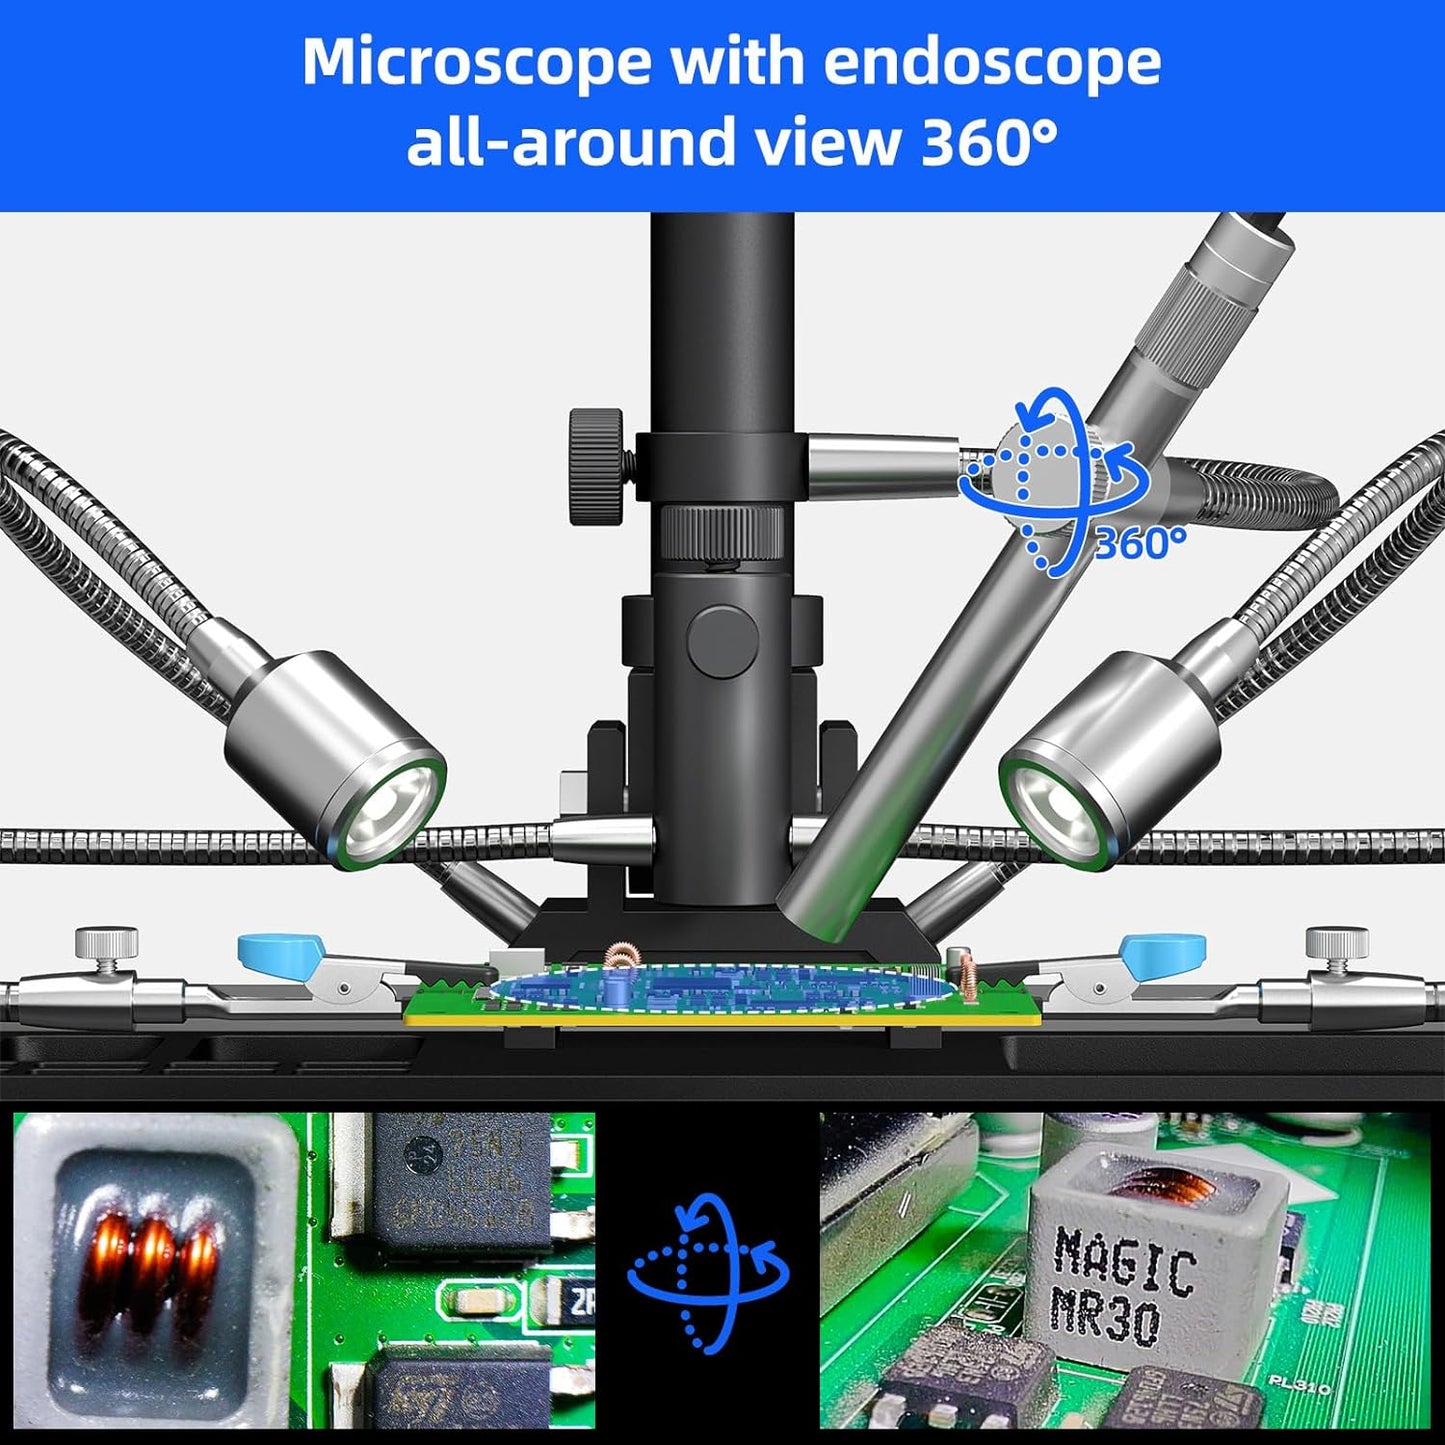 AD409 Max 10inch HDMI Digital Microscope w/ Endoscope